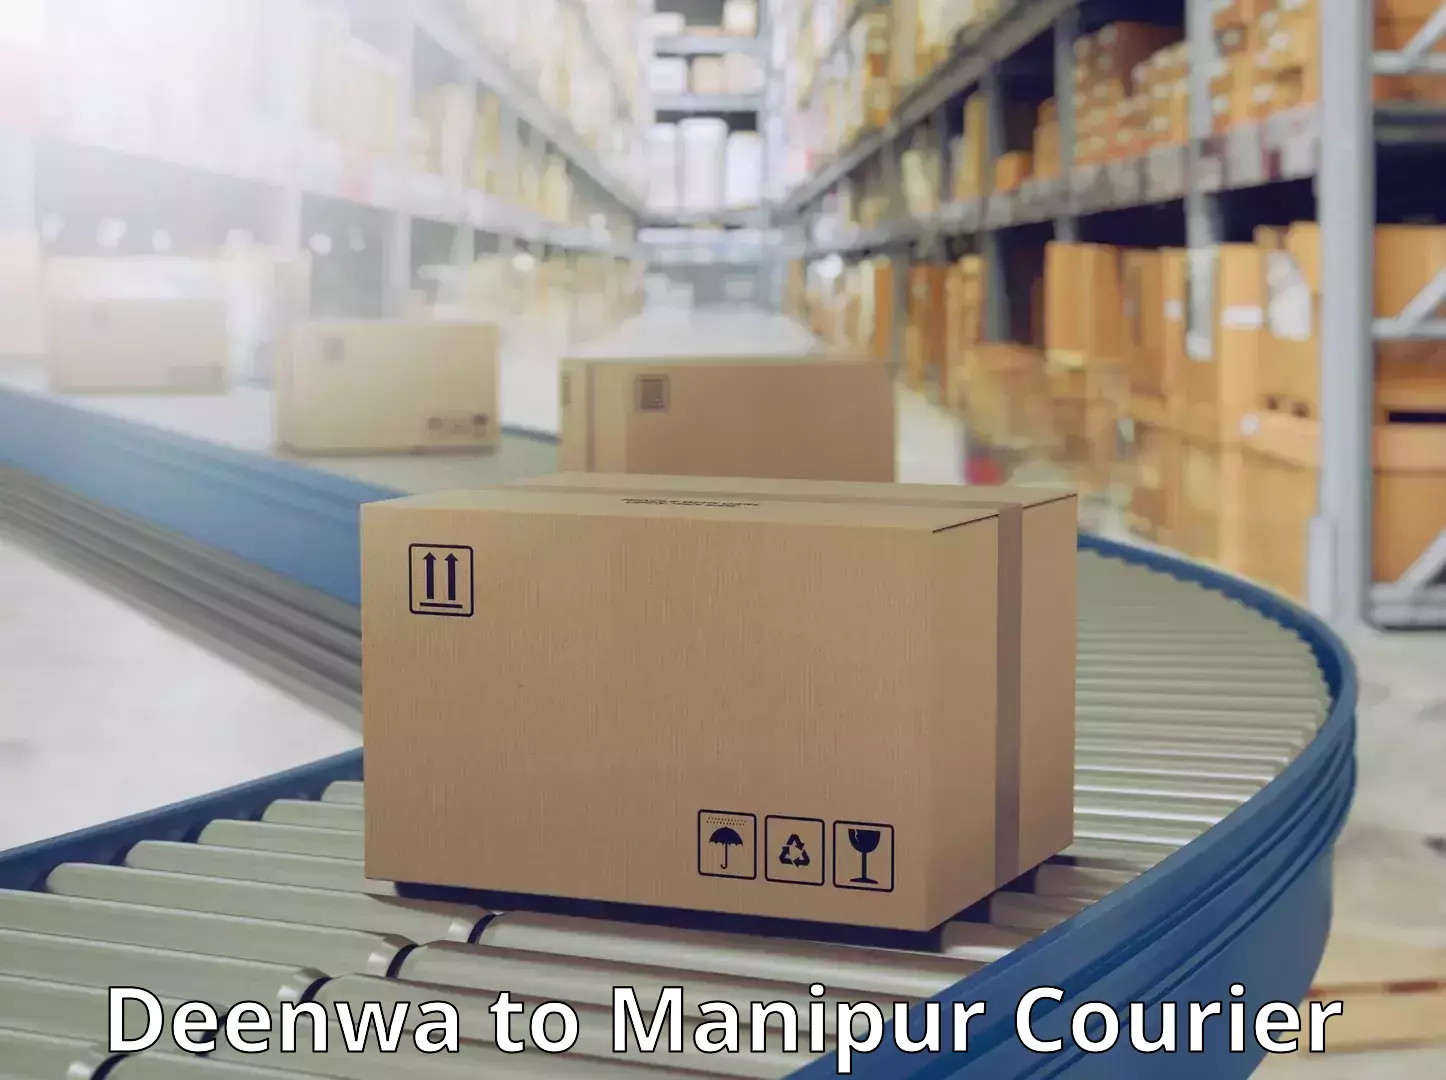 Modern courier technology Deenwa to Churachandpur